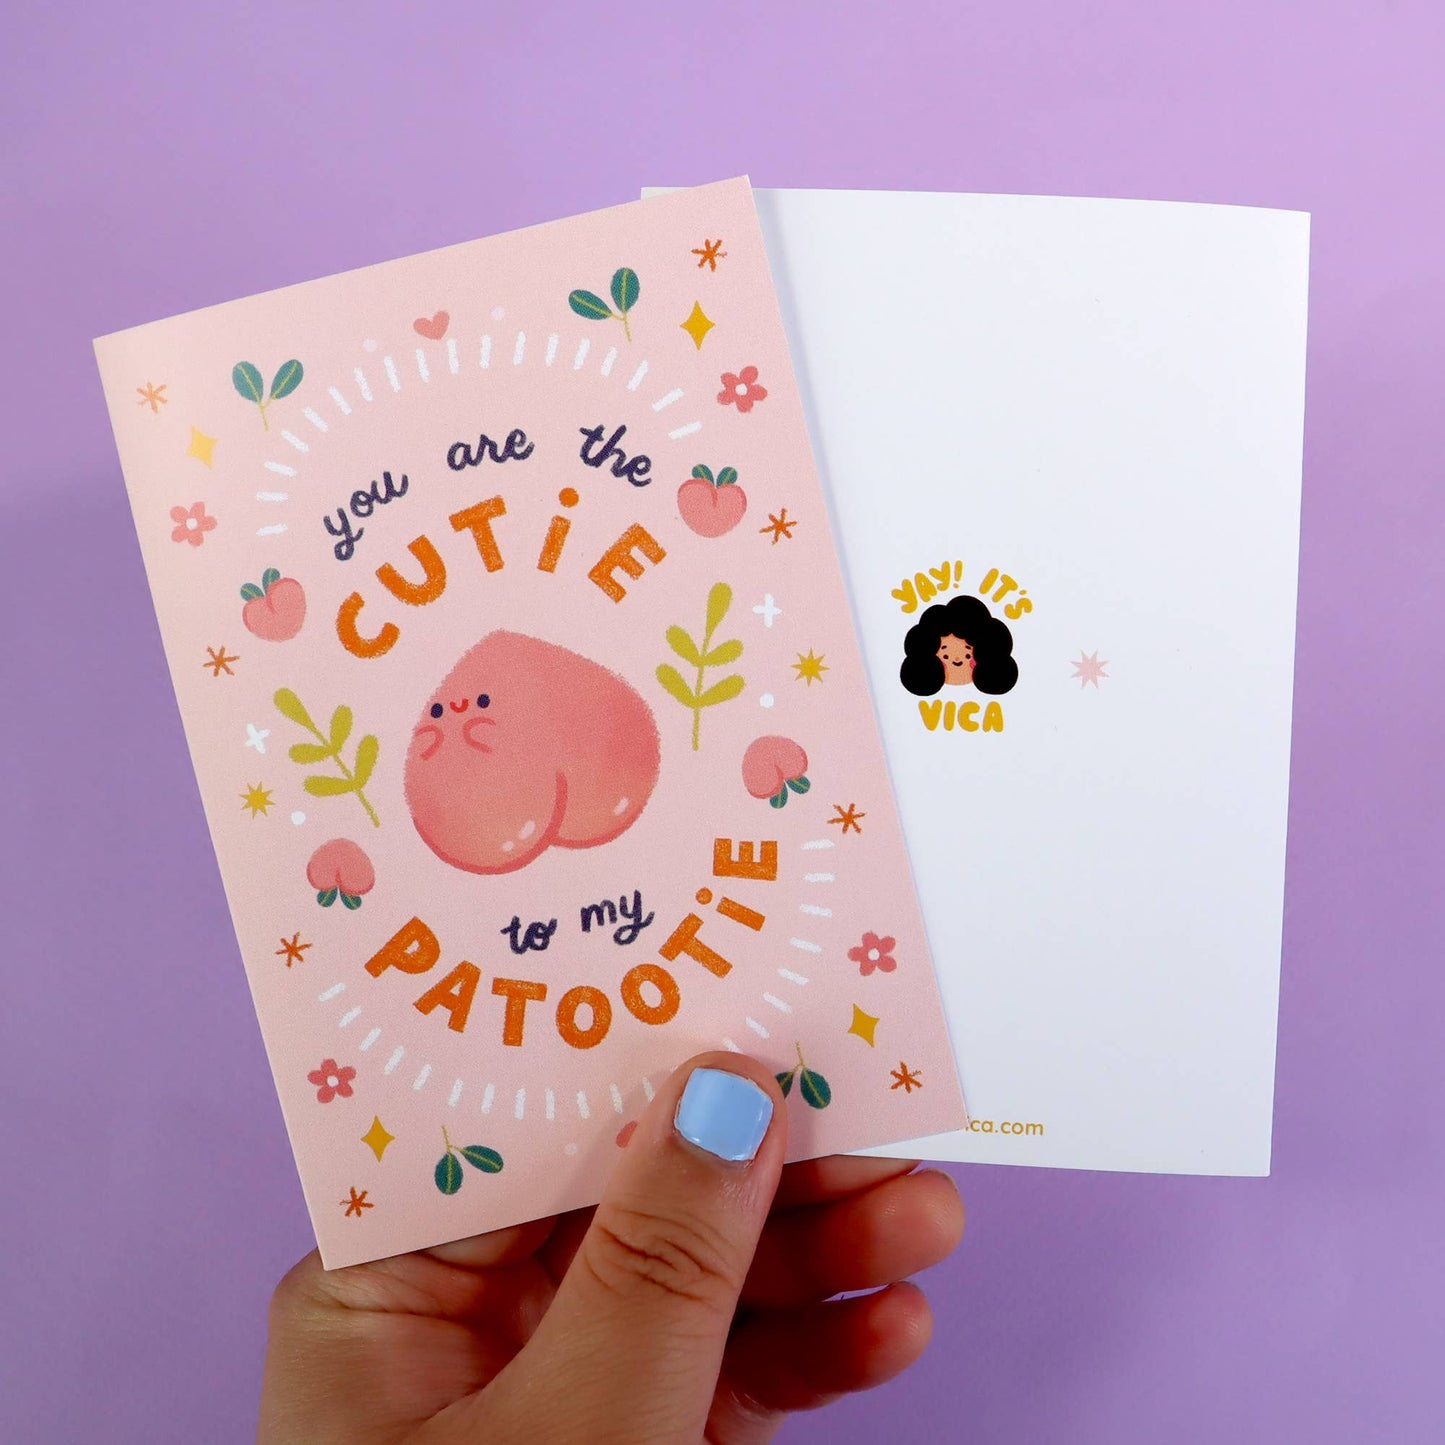 Cutie Patootie Greeting Card